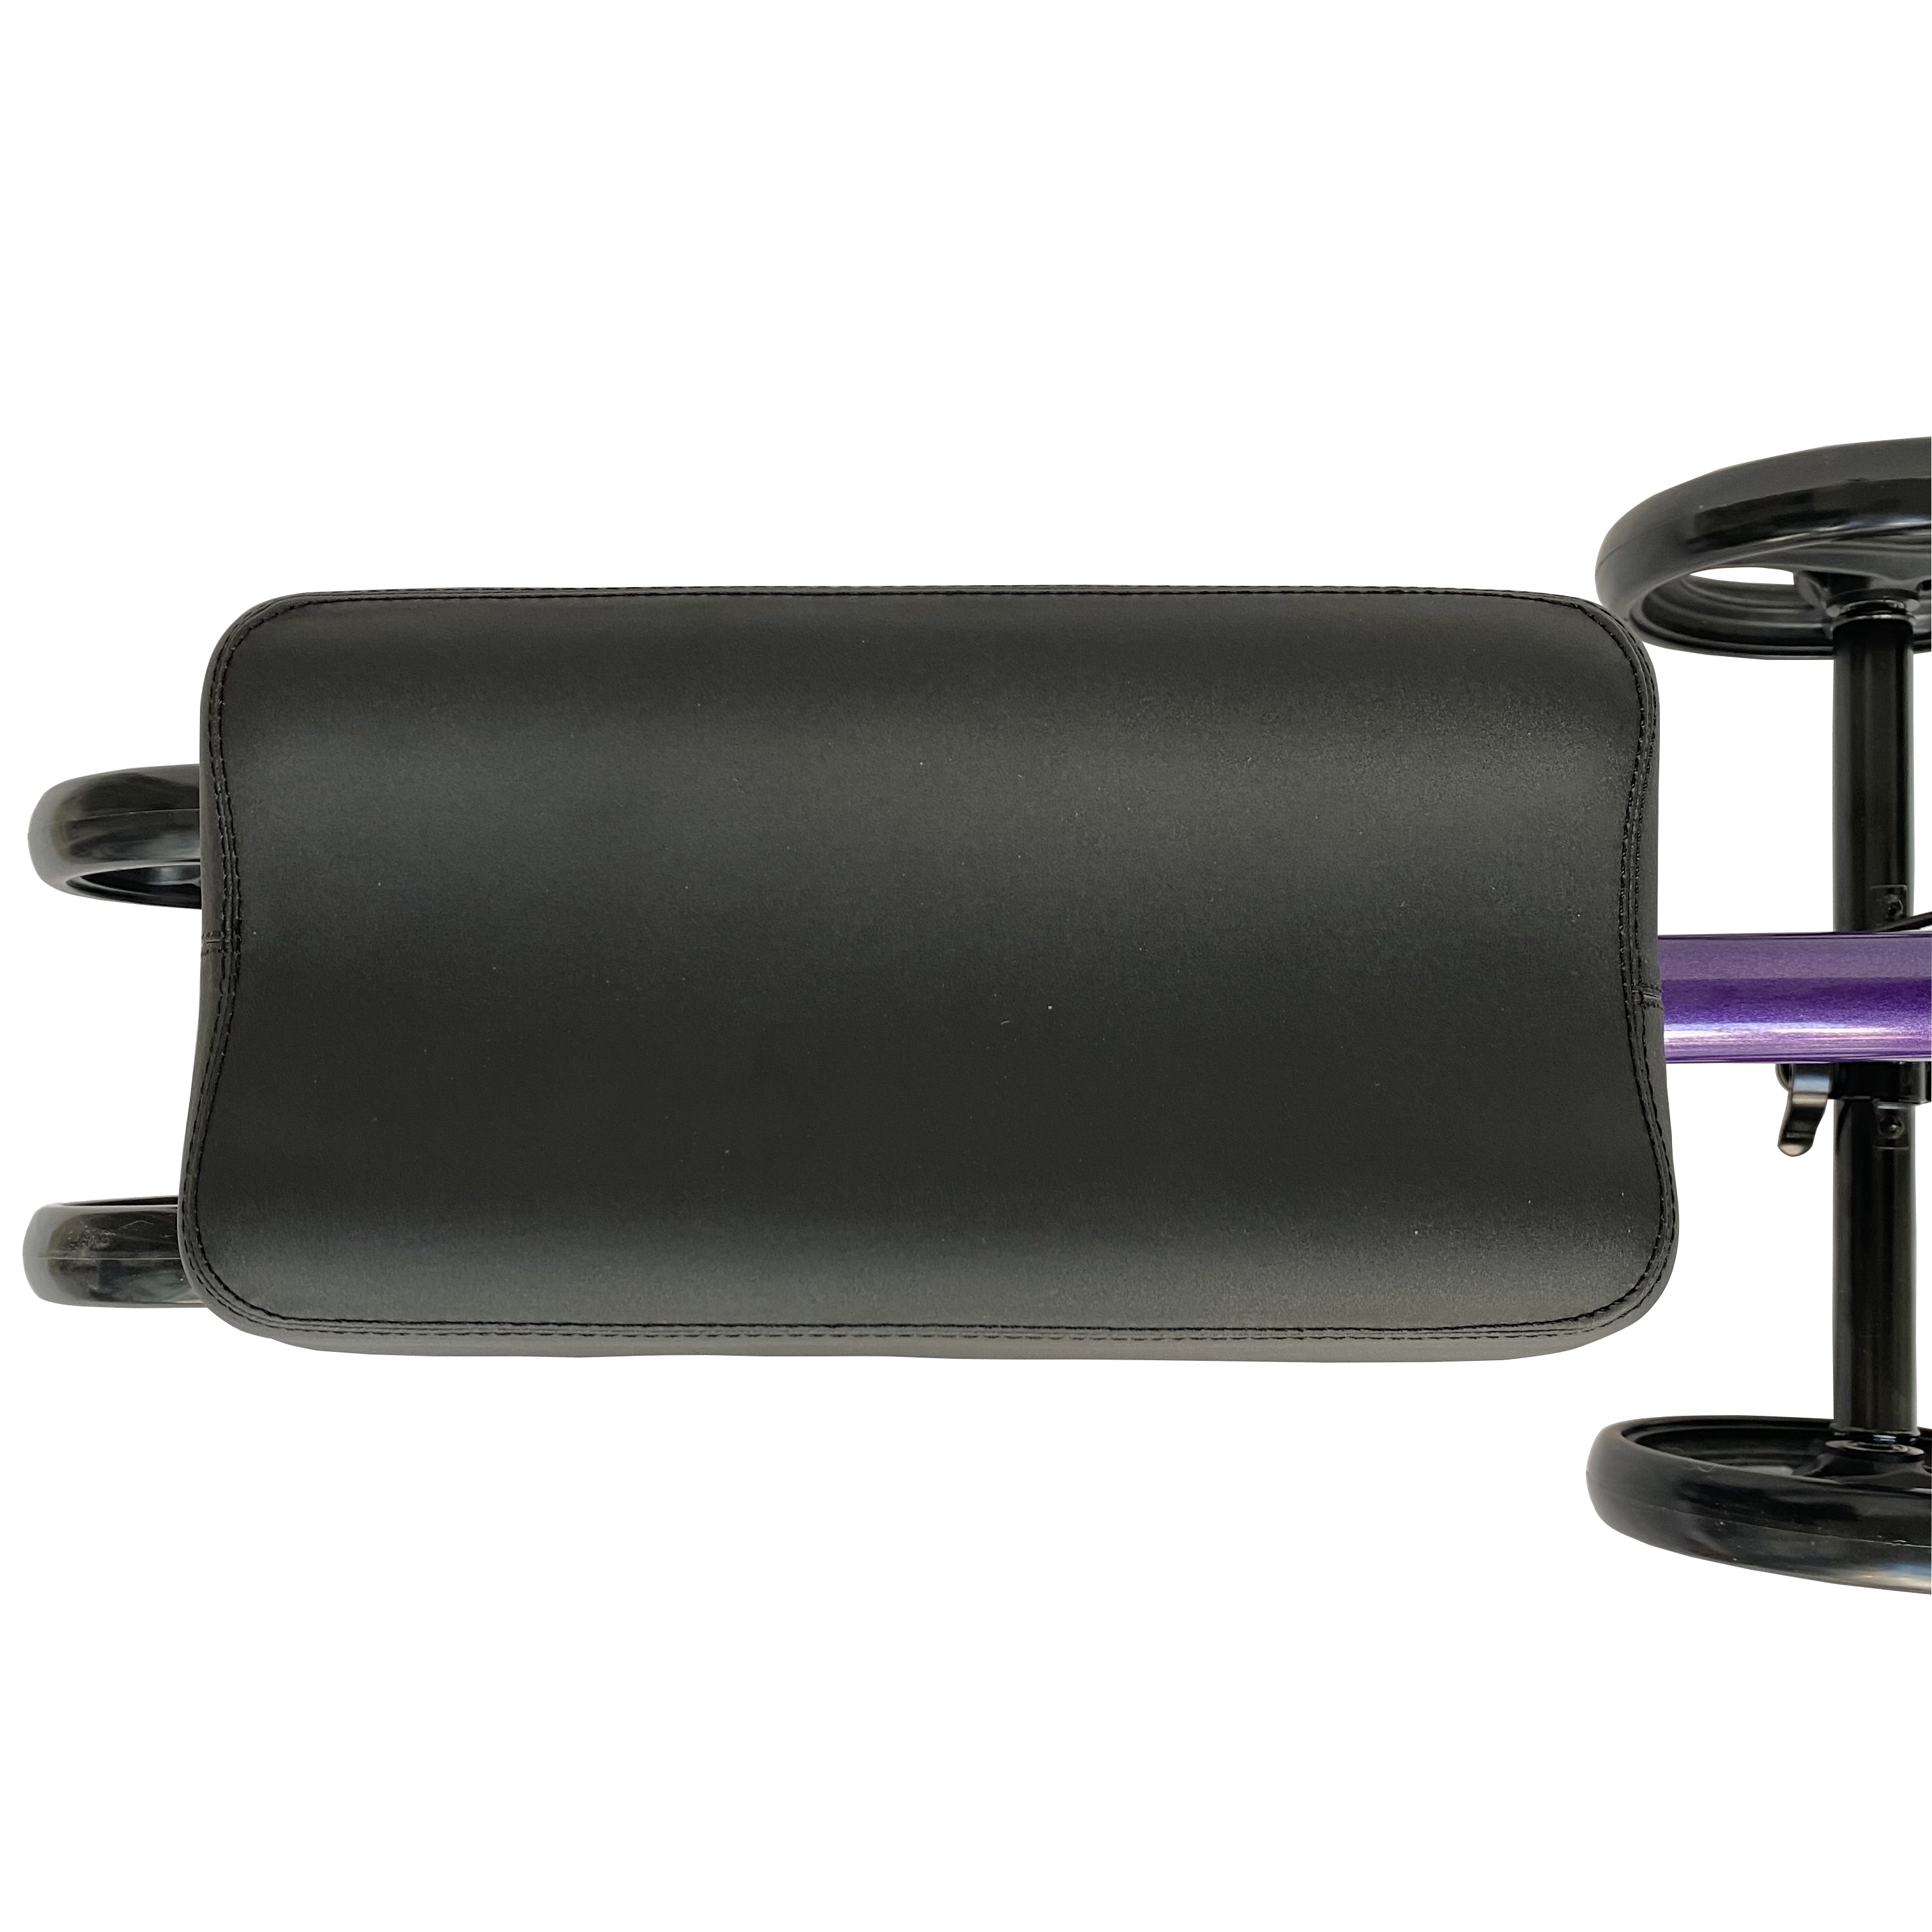 8 인치 PVC 휠 트래50을 갖춘 강철 접이식 롤 레이터 무릎 워커 롤 레이터